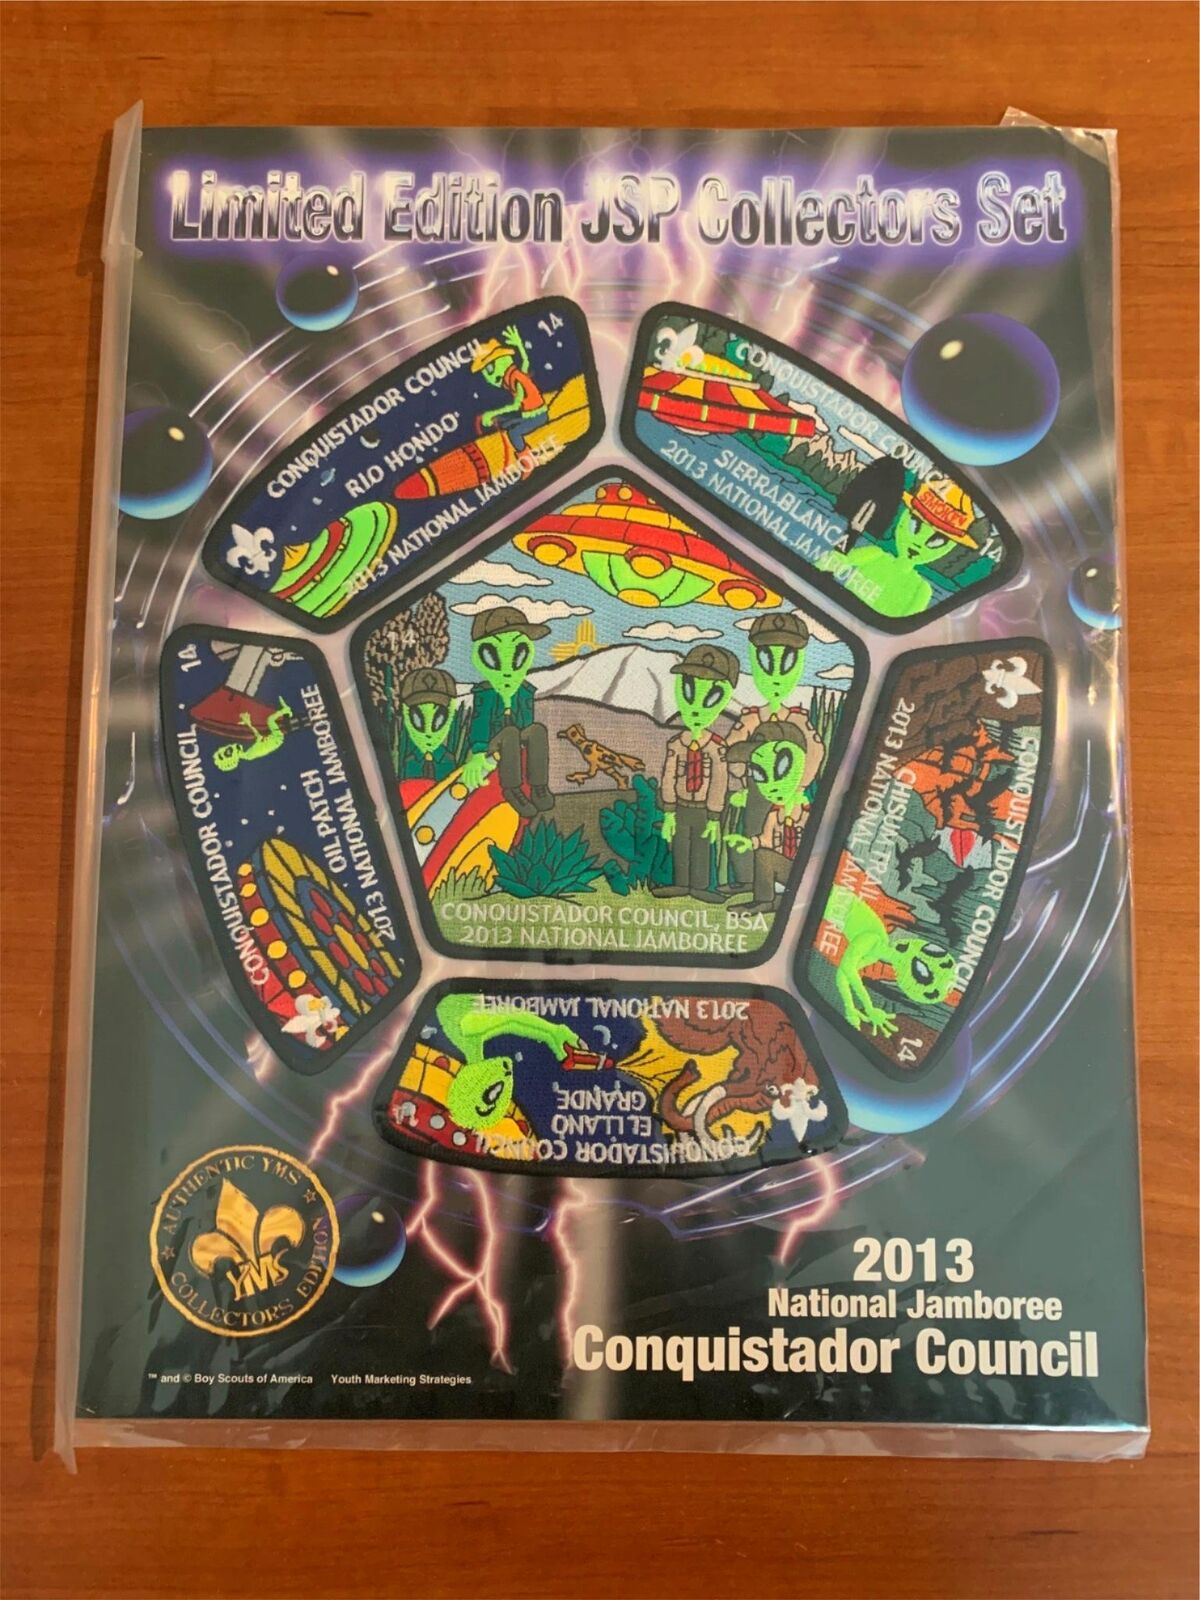 BSA, 2013 Jamboree Limited Edition Patch Set, Conquistador Council, #14